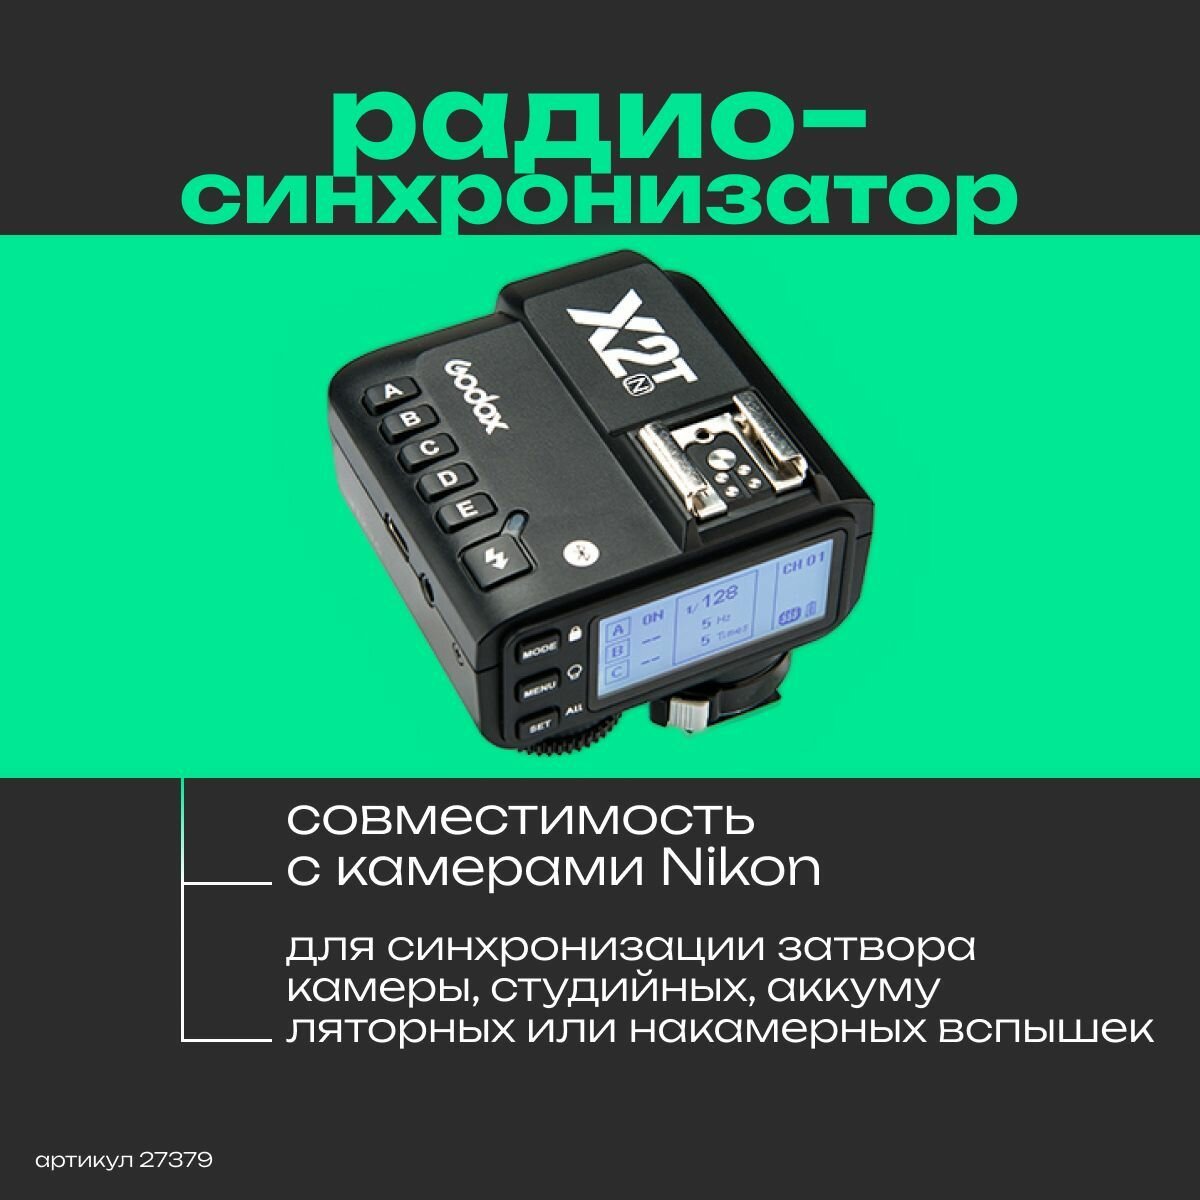 Пульт-радиосинхронизатор Godox X2T-N TTL для Nikon с функцией ДУ, ЖК-дисплей с подсветкой